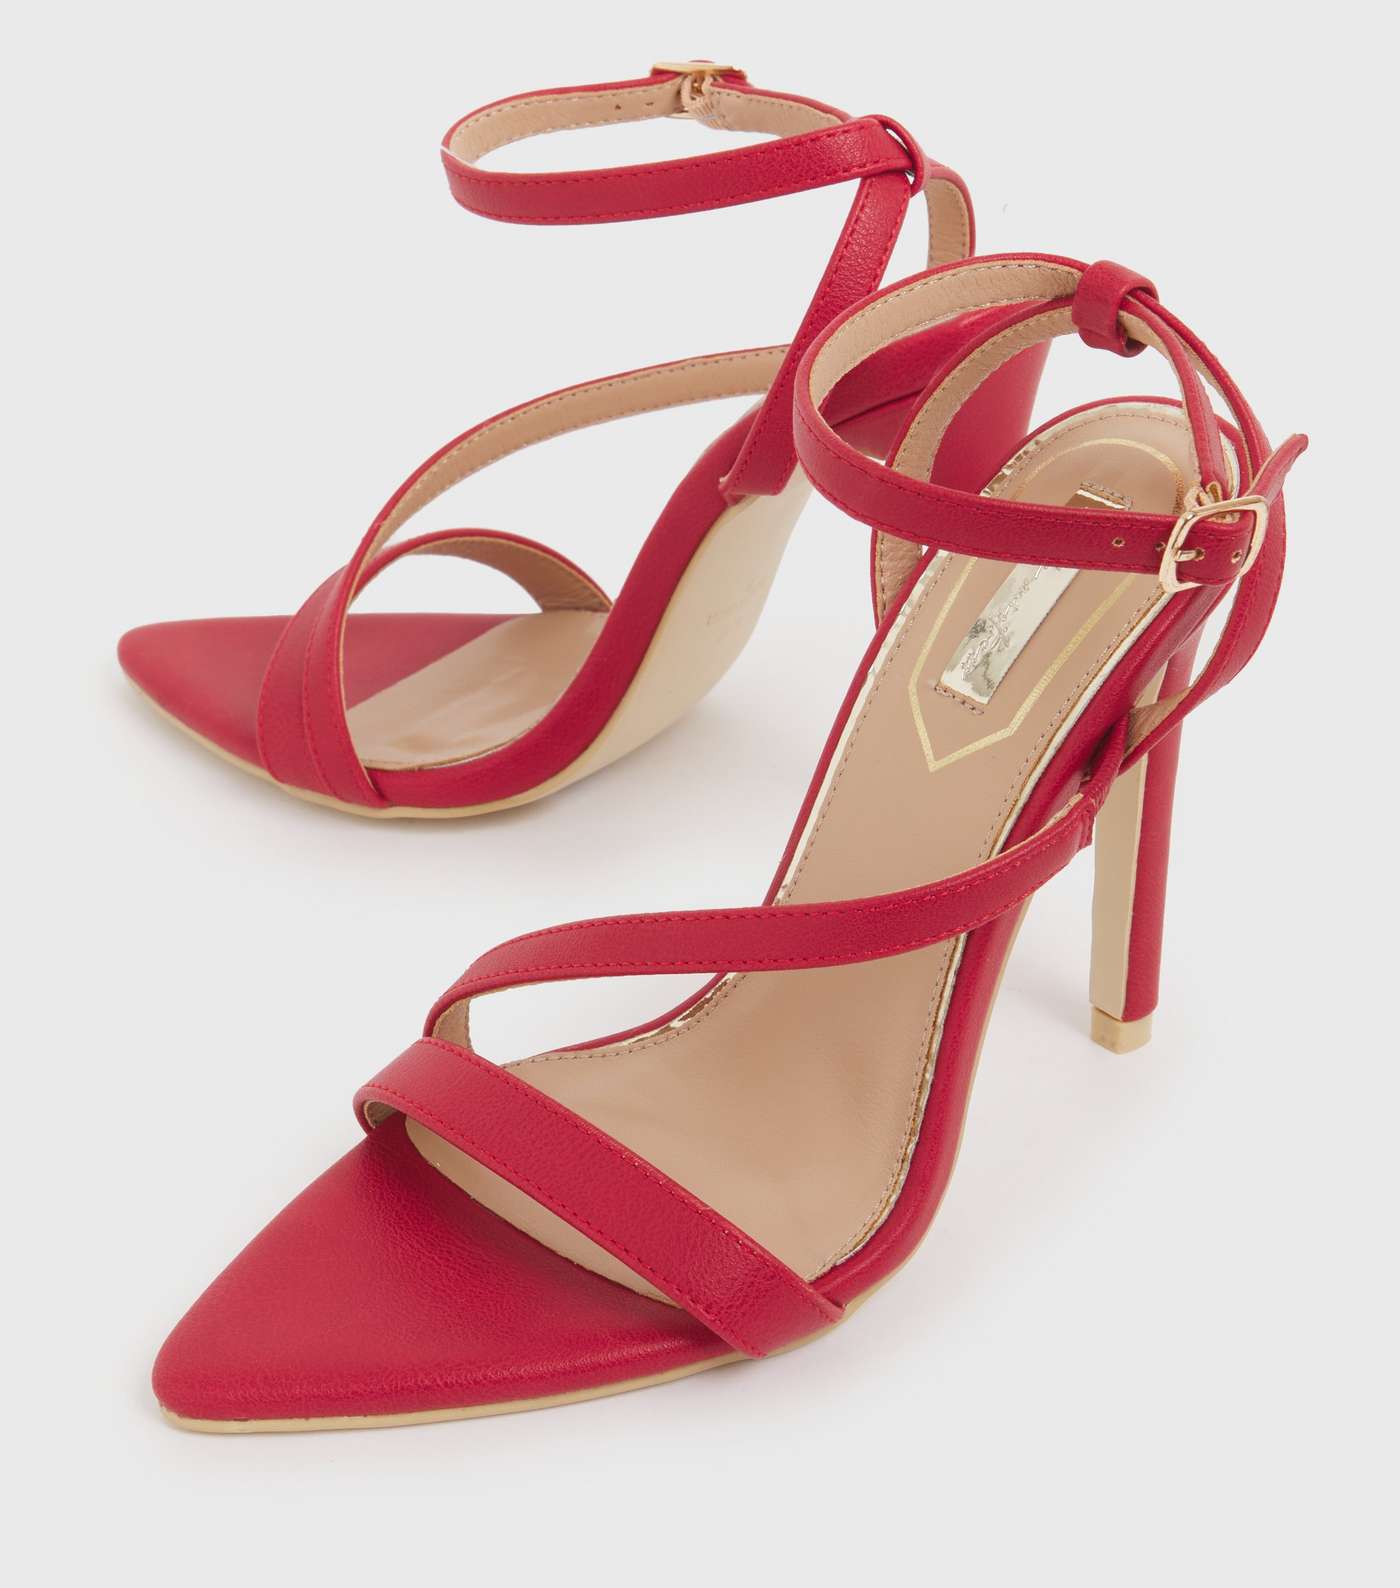 Little Mistress Red Twist Strap Stiletto Heel Sandals Image 3